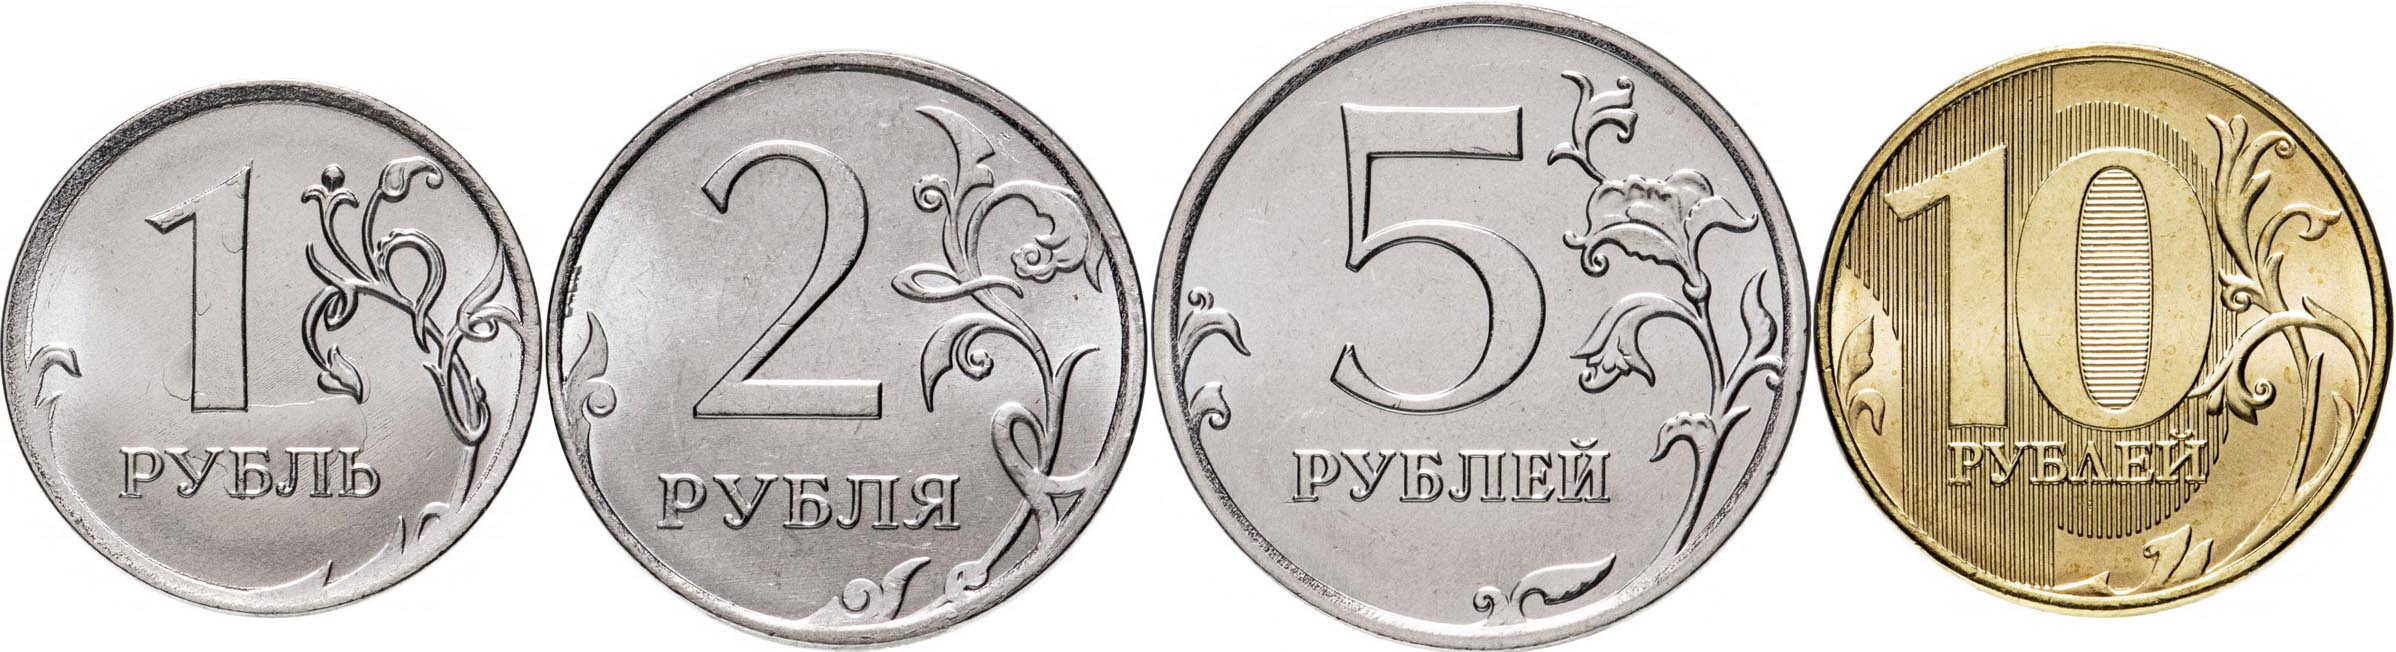 Купить рубли монеты россия. Монеты рубли. Монеты рубли на прозрачном фоне. 2 Рублевая монета 2020. Монеты России 2 рубль - 2020.